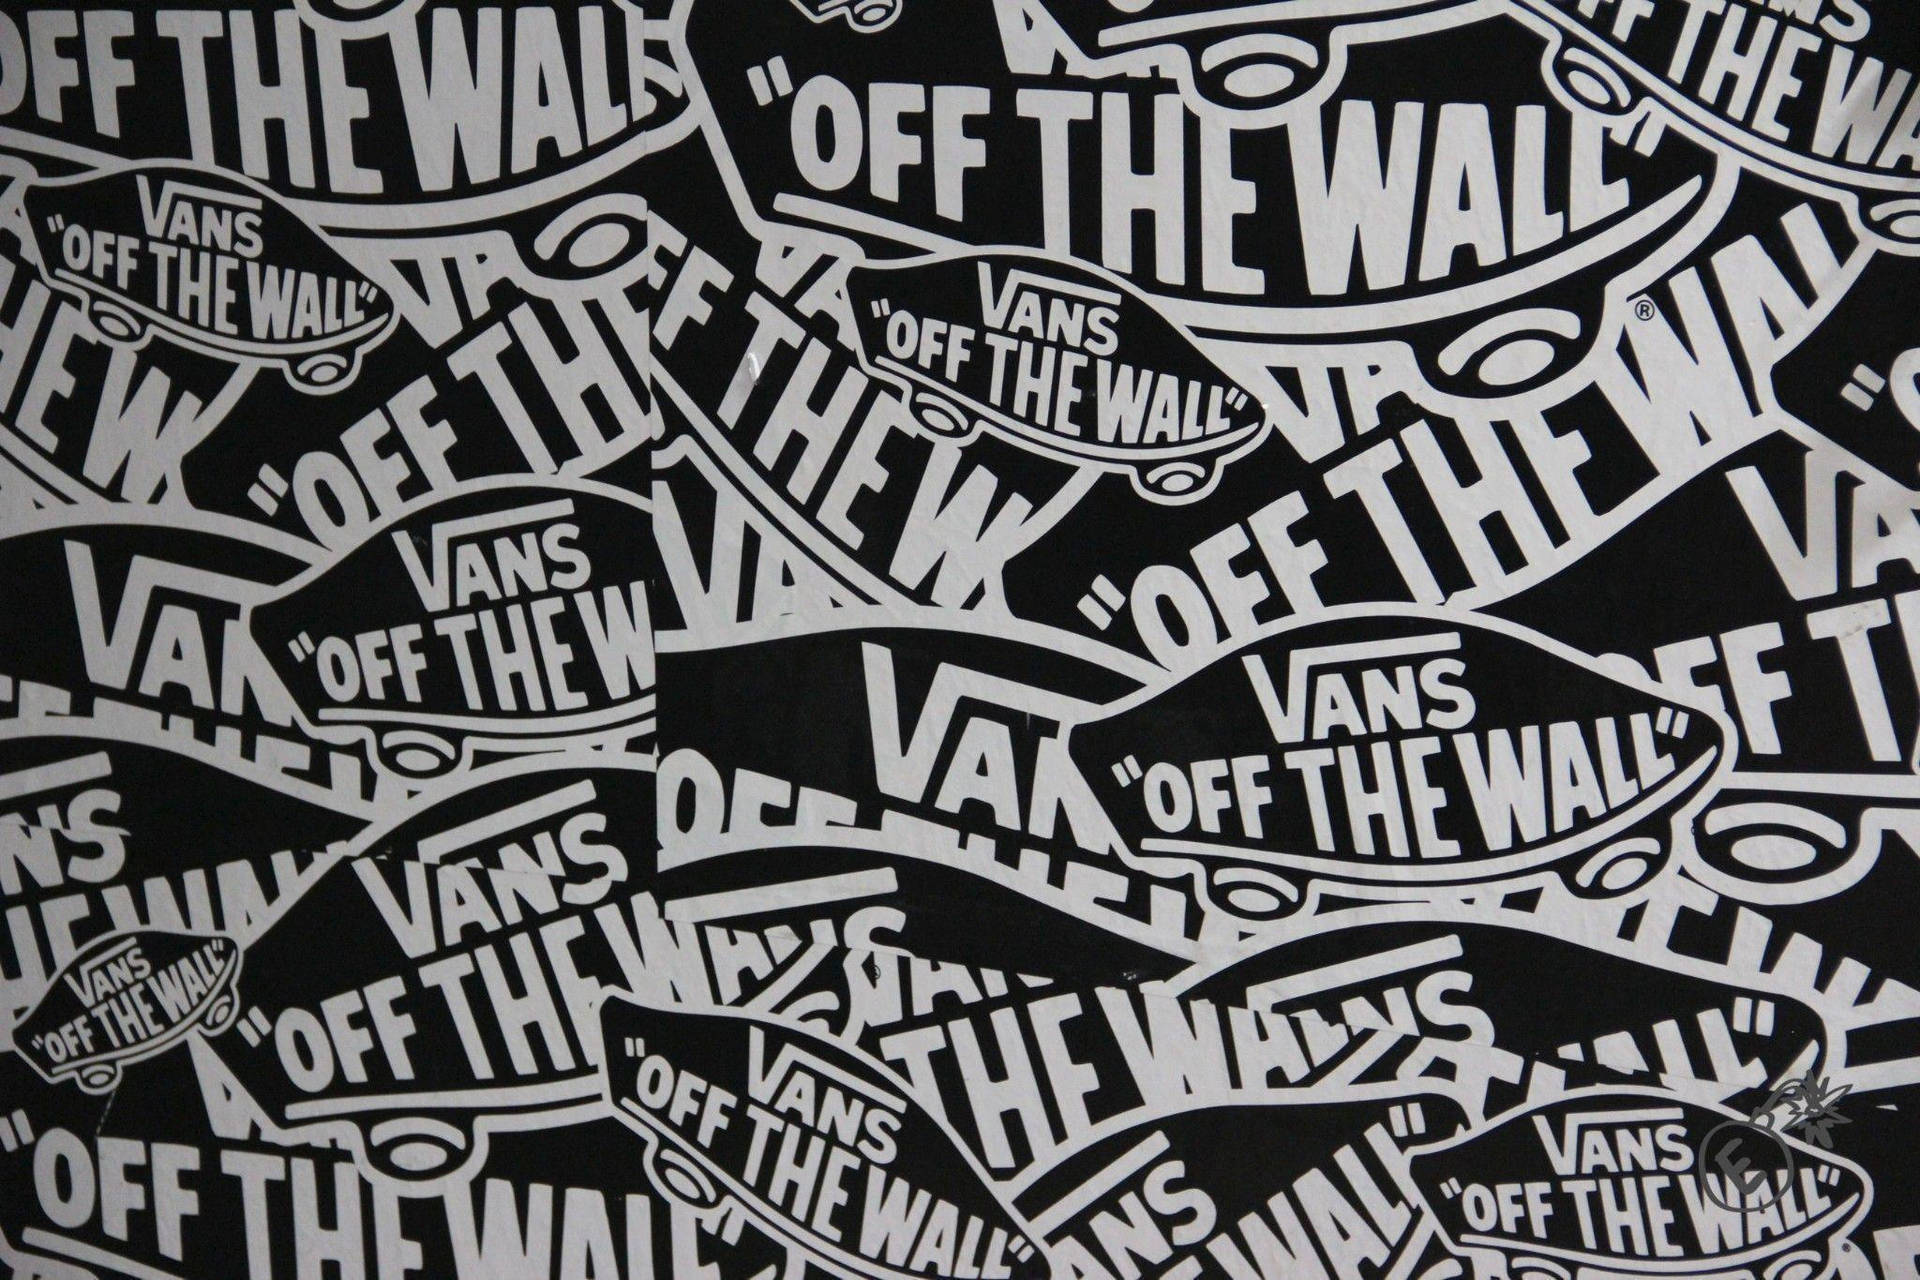 Download Vans Wallpaper